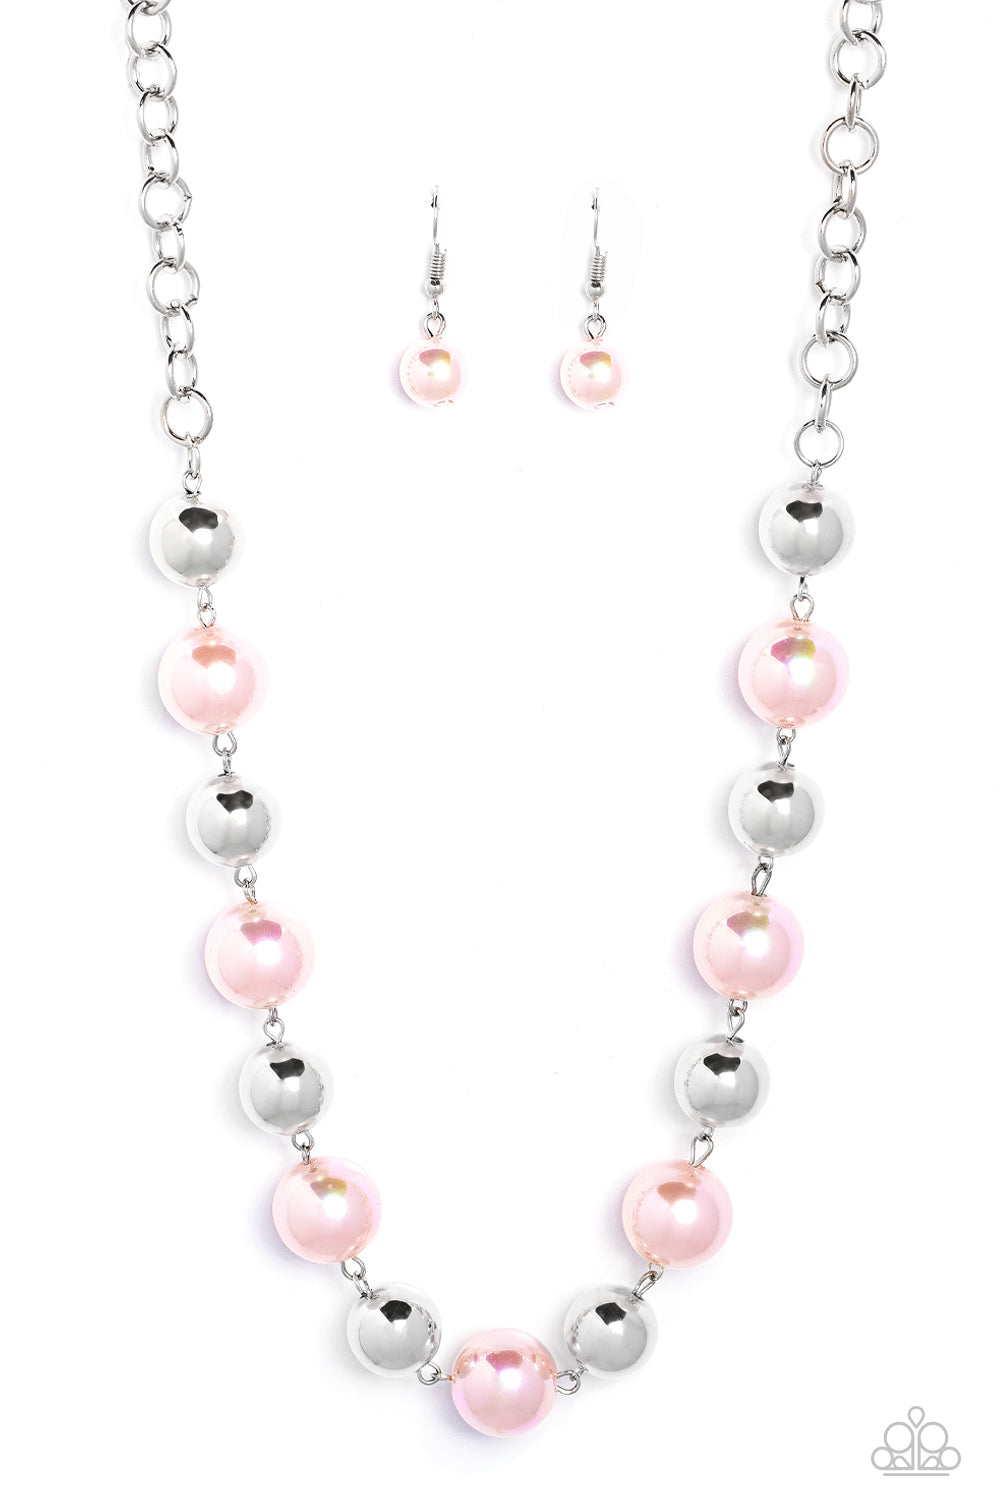 Dreamscape Escape Pink Necklace & Bracelet Set - Paparazzi Accessories